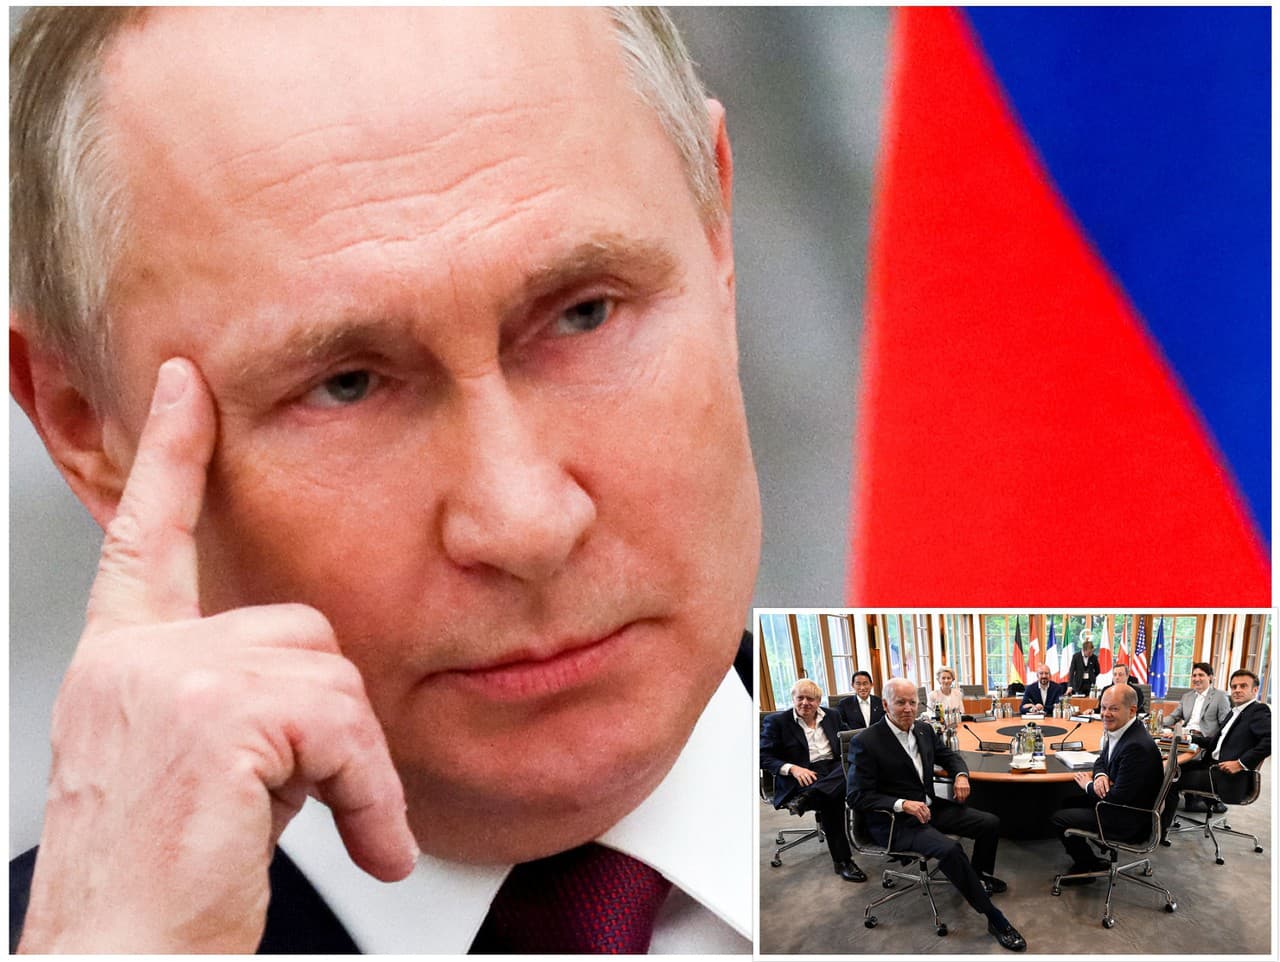 Vladimir Putin uviedol, že vidieť nahých lídrov siedmich hospodársky najvyspelejších štátov sveta združených v skupine G7 by bolo nechutné